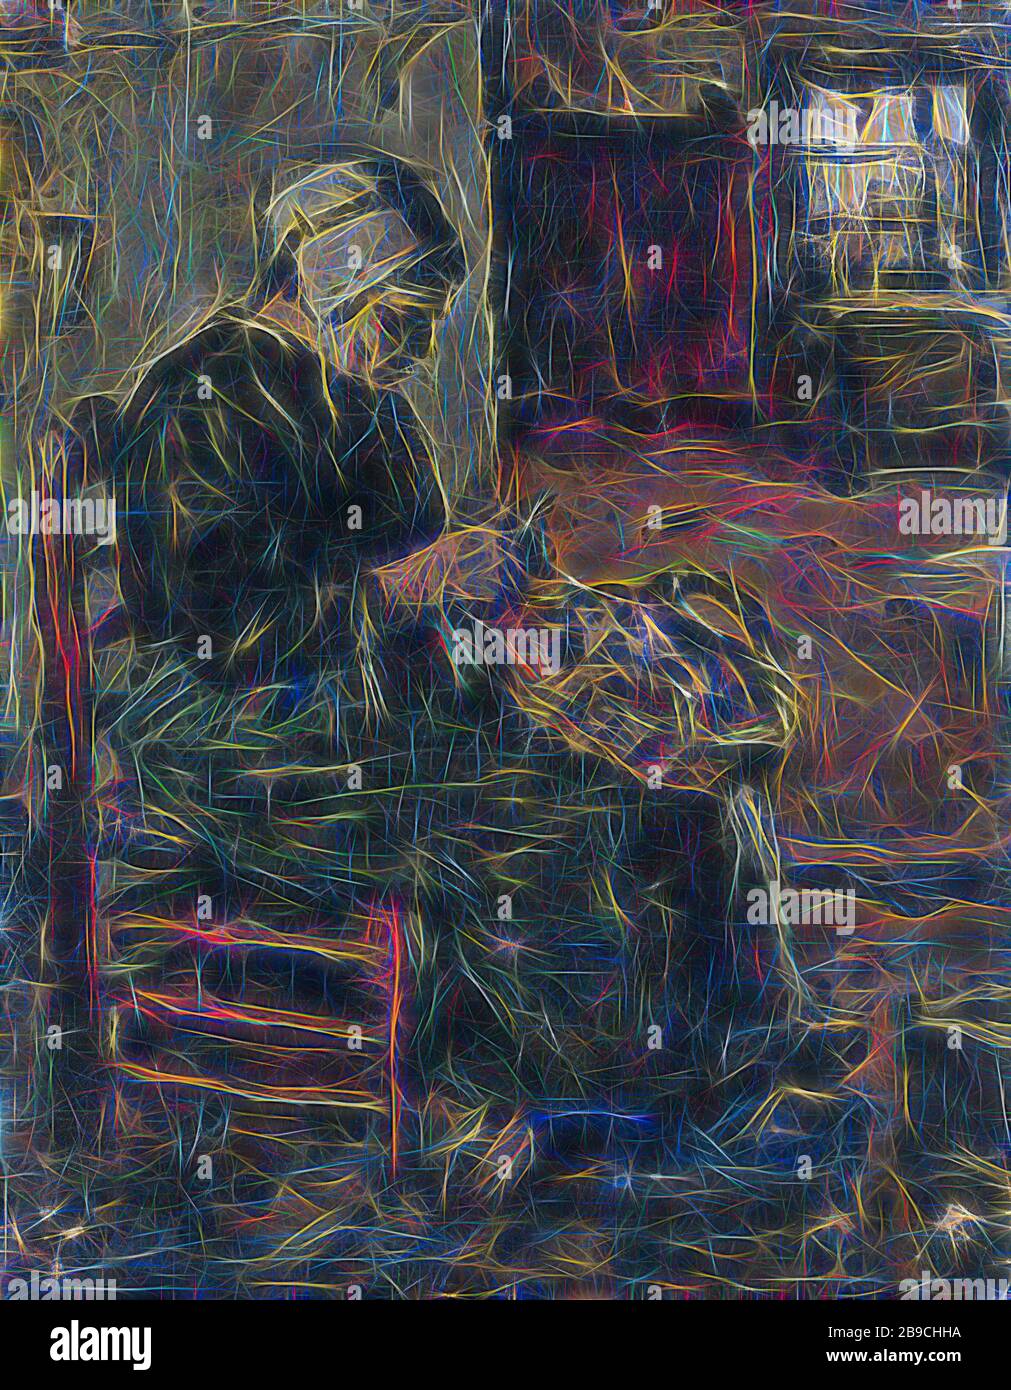 Paysan Woman Peeling pommes de terre, intérieur avec l'épouse d'un fermier pelant les pommes de terre tout en étant assis dans une chaise. Sur la droite un regard à travers à une autre pièce, pommes de terre, légumes de nettoyage, Suze Robertson, 1875 - 1922, panneau, peinture à l'huile (peinture), h 26,2 cm × W 21 cm d 5,5 cm, repensé par Gibon, design de gaie chaleureuse de luminosité et rayons de lumière radiance. L'art classique réinventé avec une touche moderne. La photographie inspirée du futurisme, qui embrasse l'énergie dynamique de la technologie moderne, du mouvement, de la vitesse et révolutionne la culture. Banque D'Images